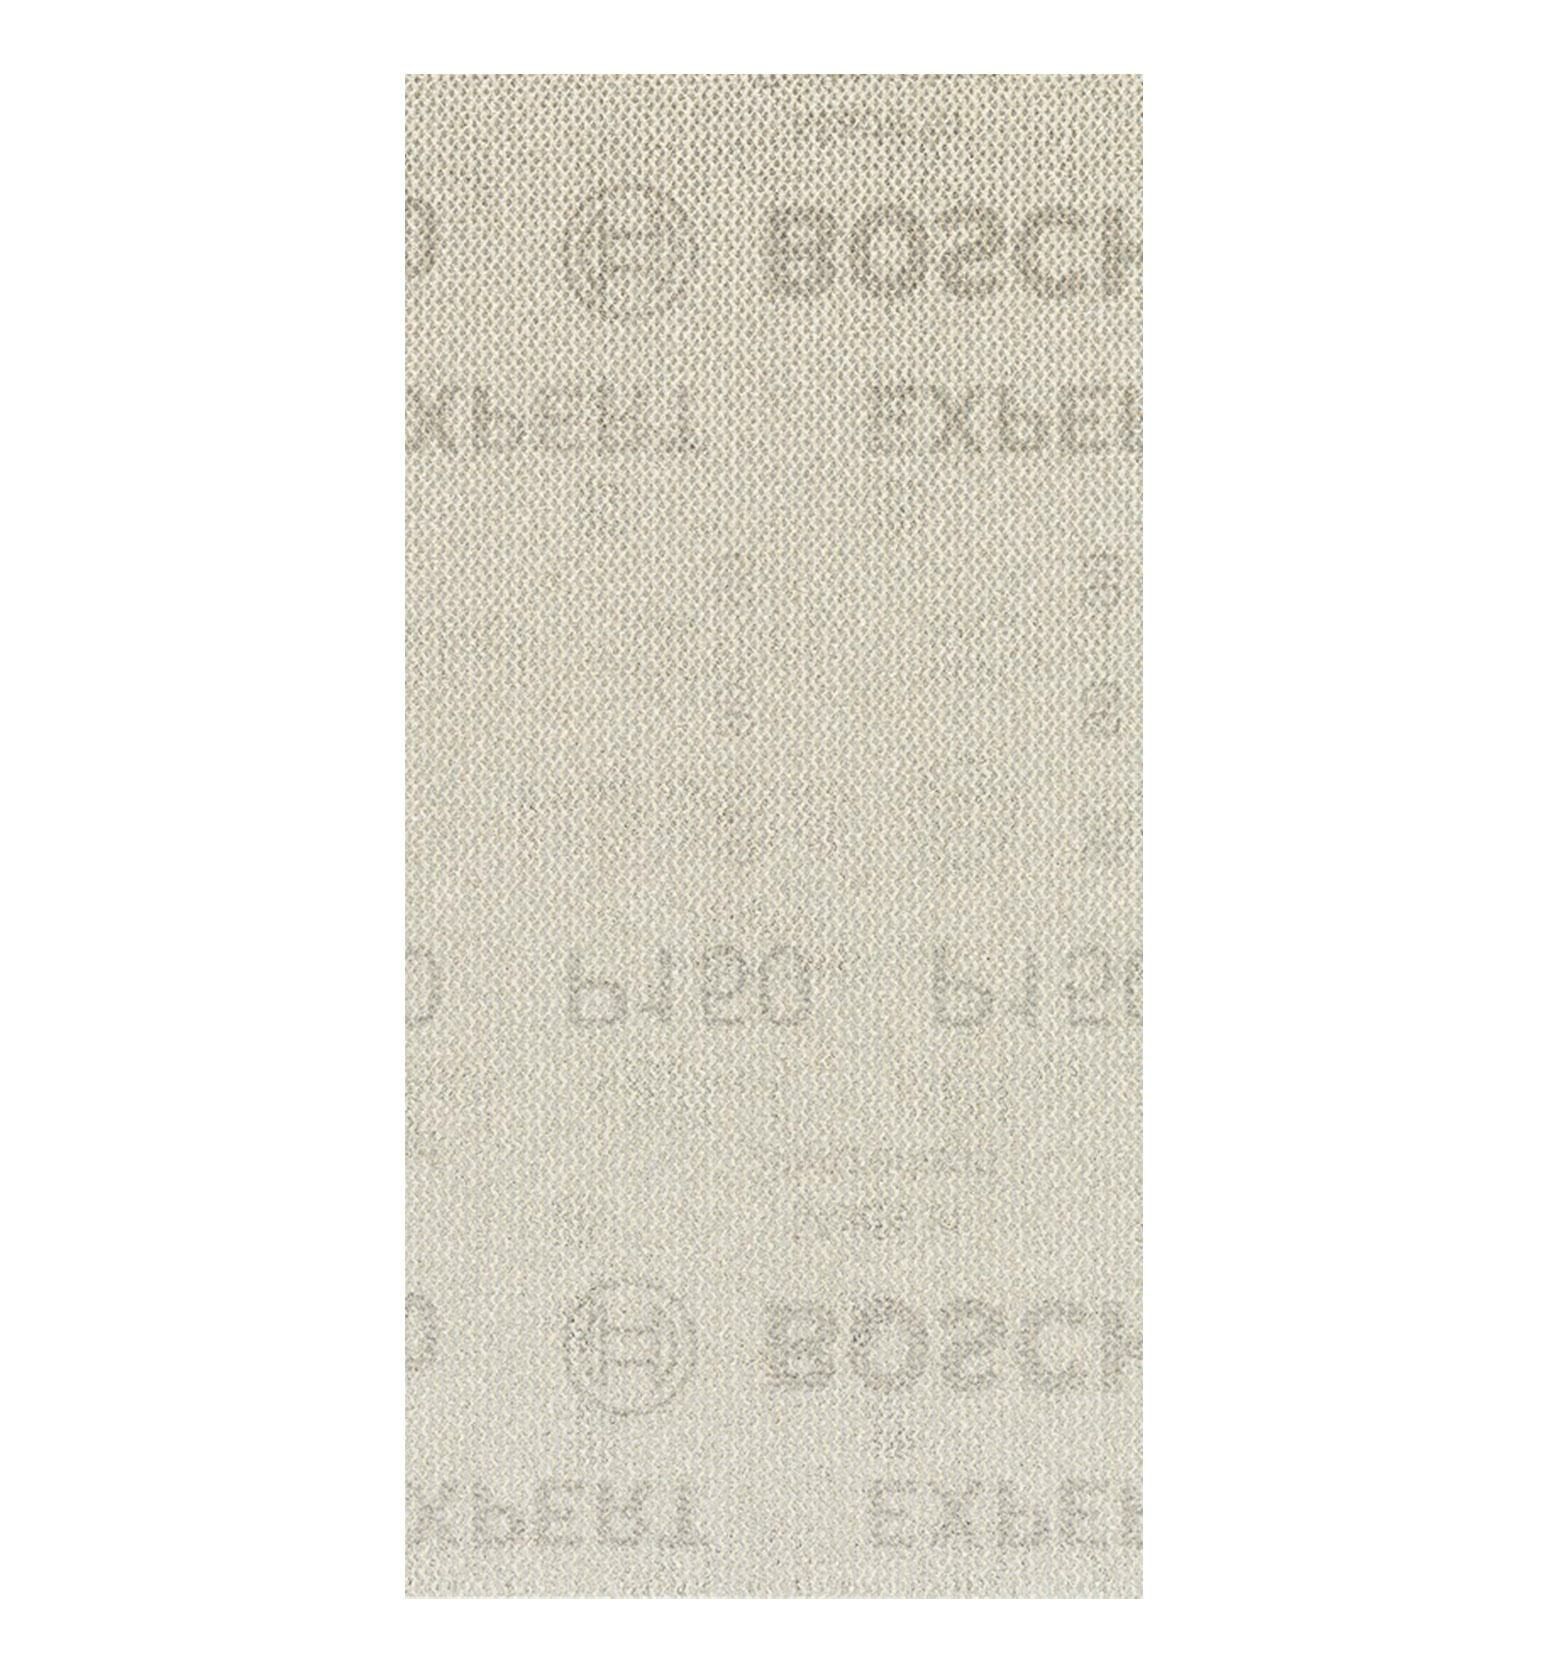 Bosch M480 93x186 mm 150 kum Elek Telli Ağ Zımpara 2608900755